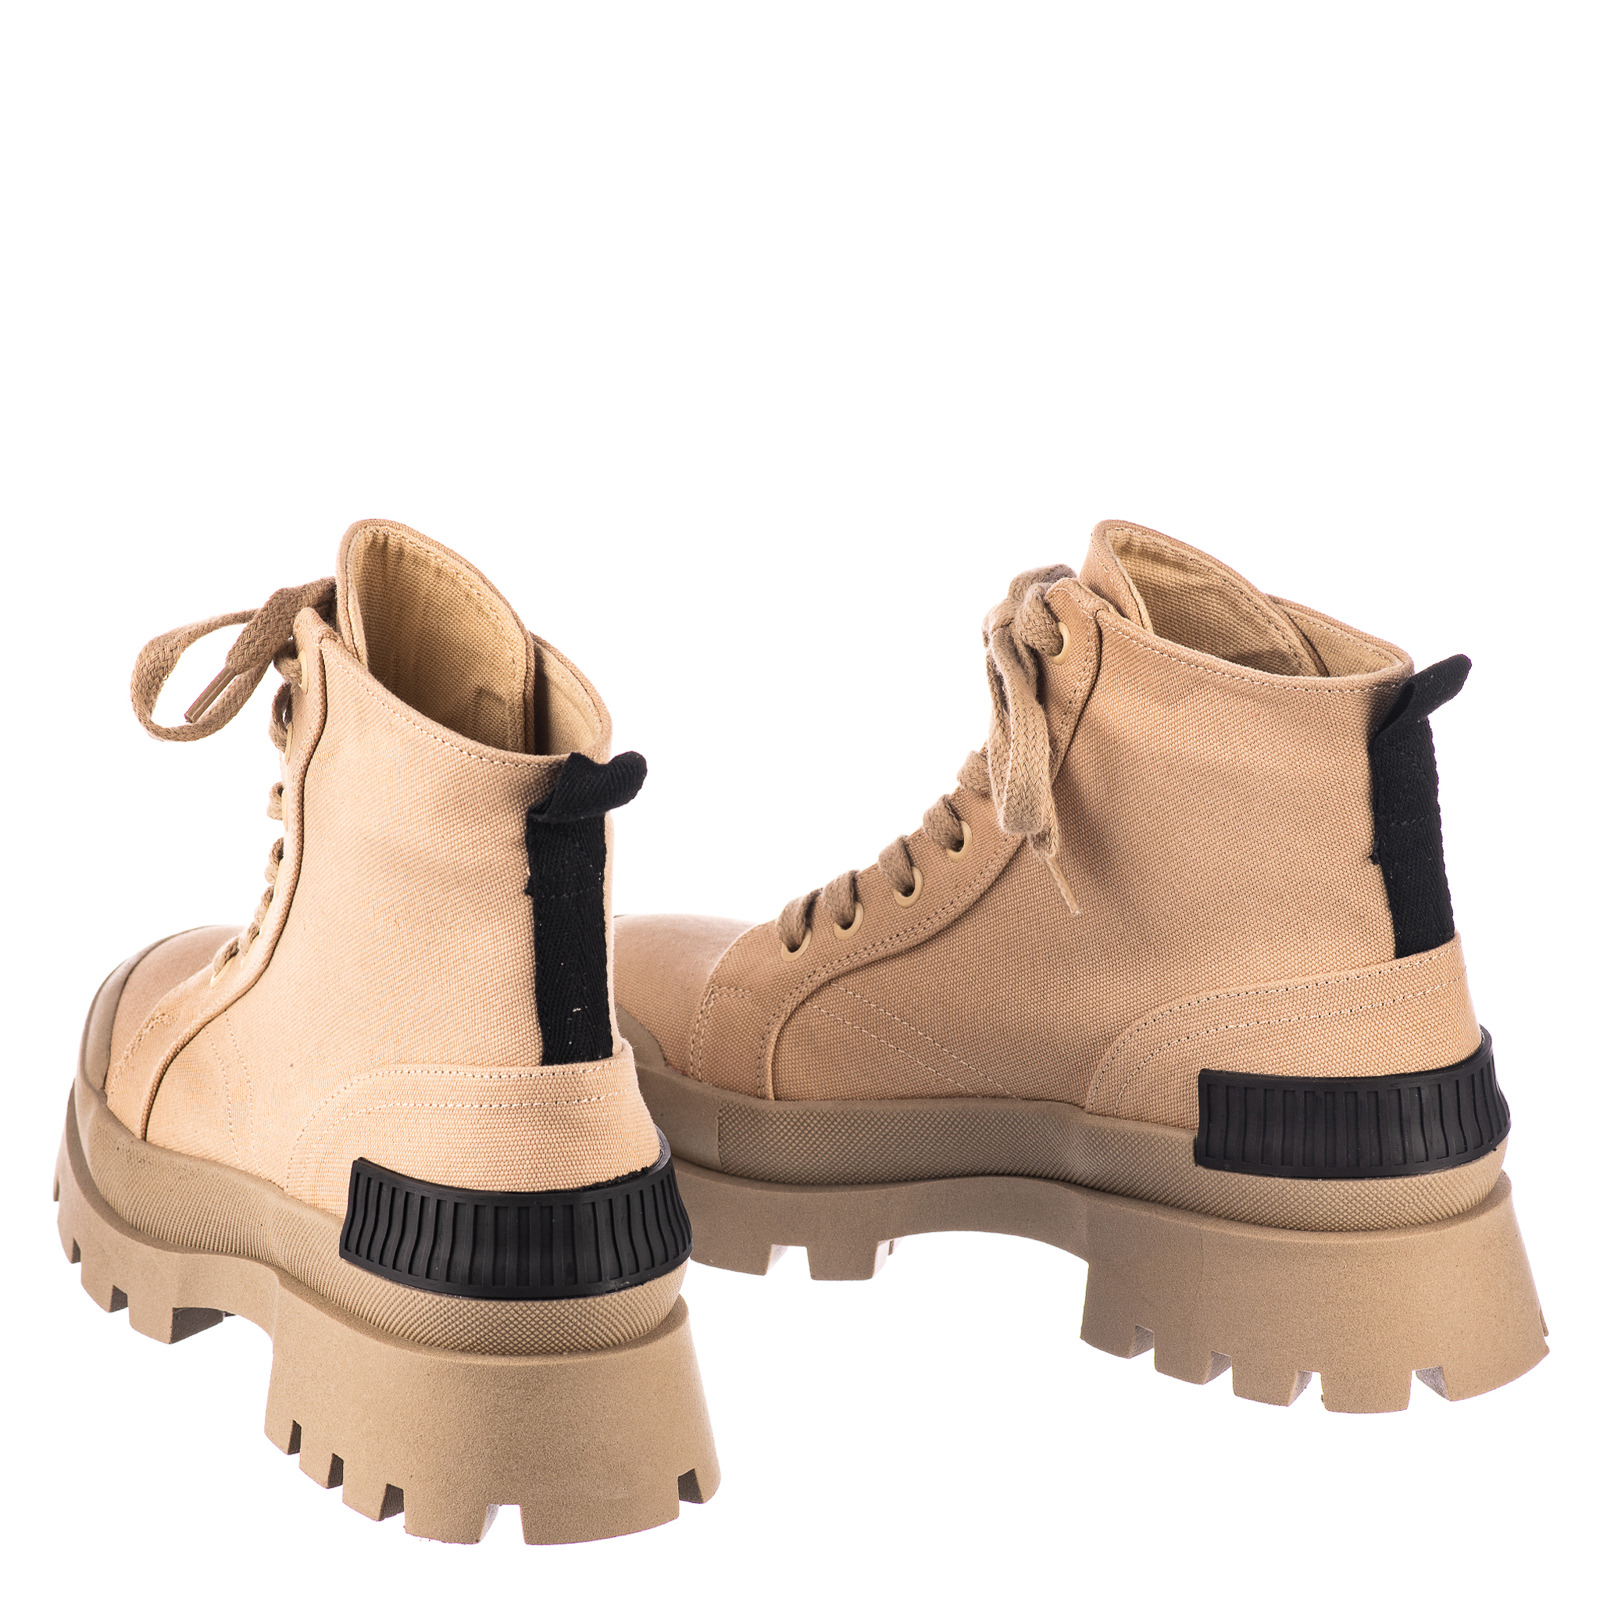 Women ankle boots B706 - BEIGE